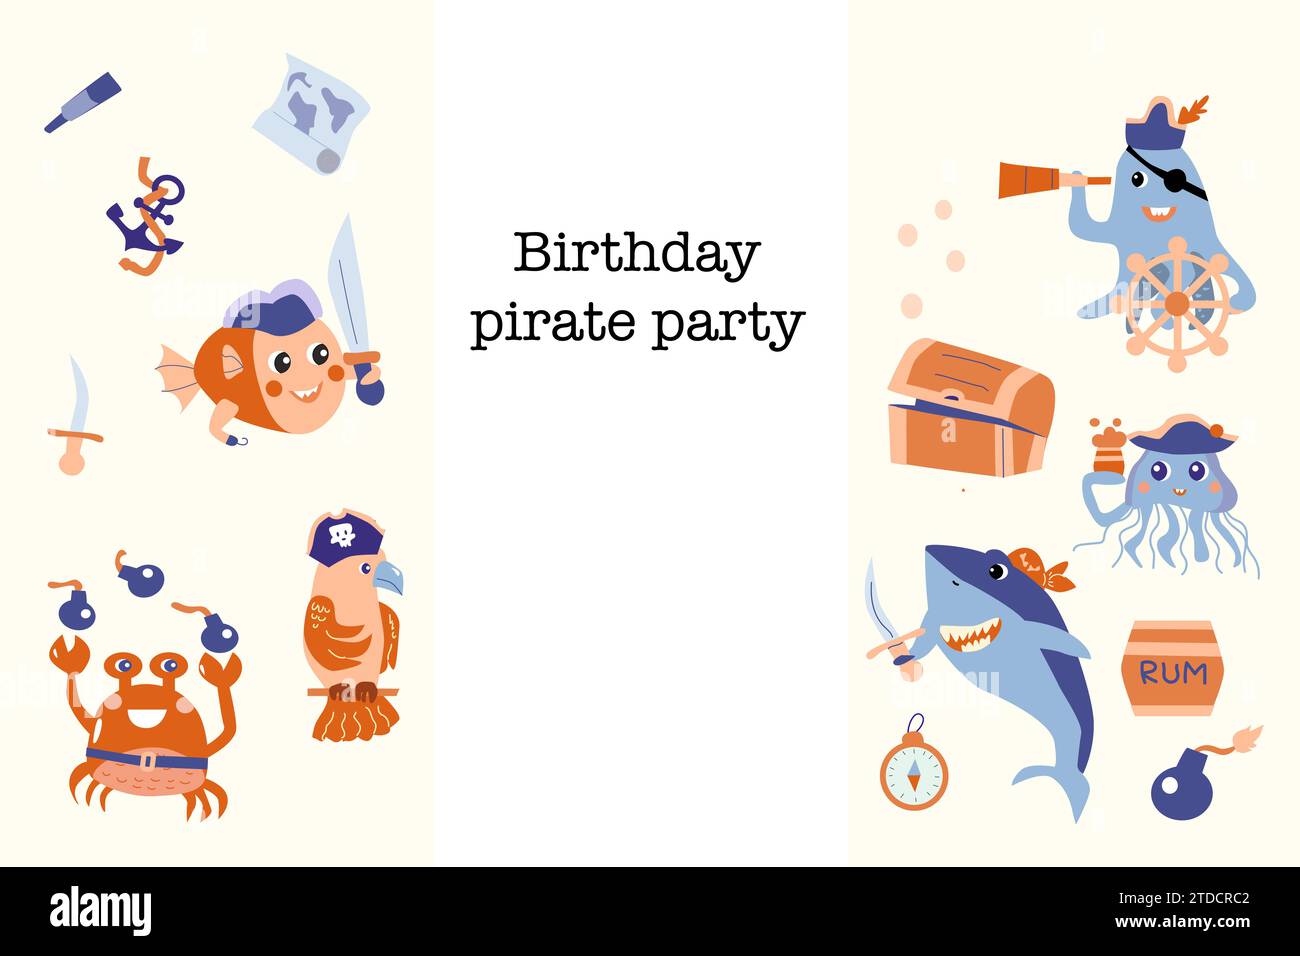 Cartoon Piraten Geburtstagsfeier Einladung Karte Flyer für Kinder. Kann für Babyfeier-Banner, Hintergrund verwendet werden. Meerestiere Geburtstagsvorlage, Sea Adventures Design. Stock Vektor